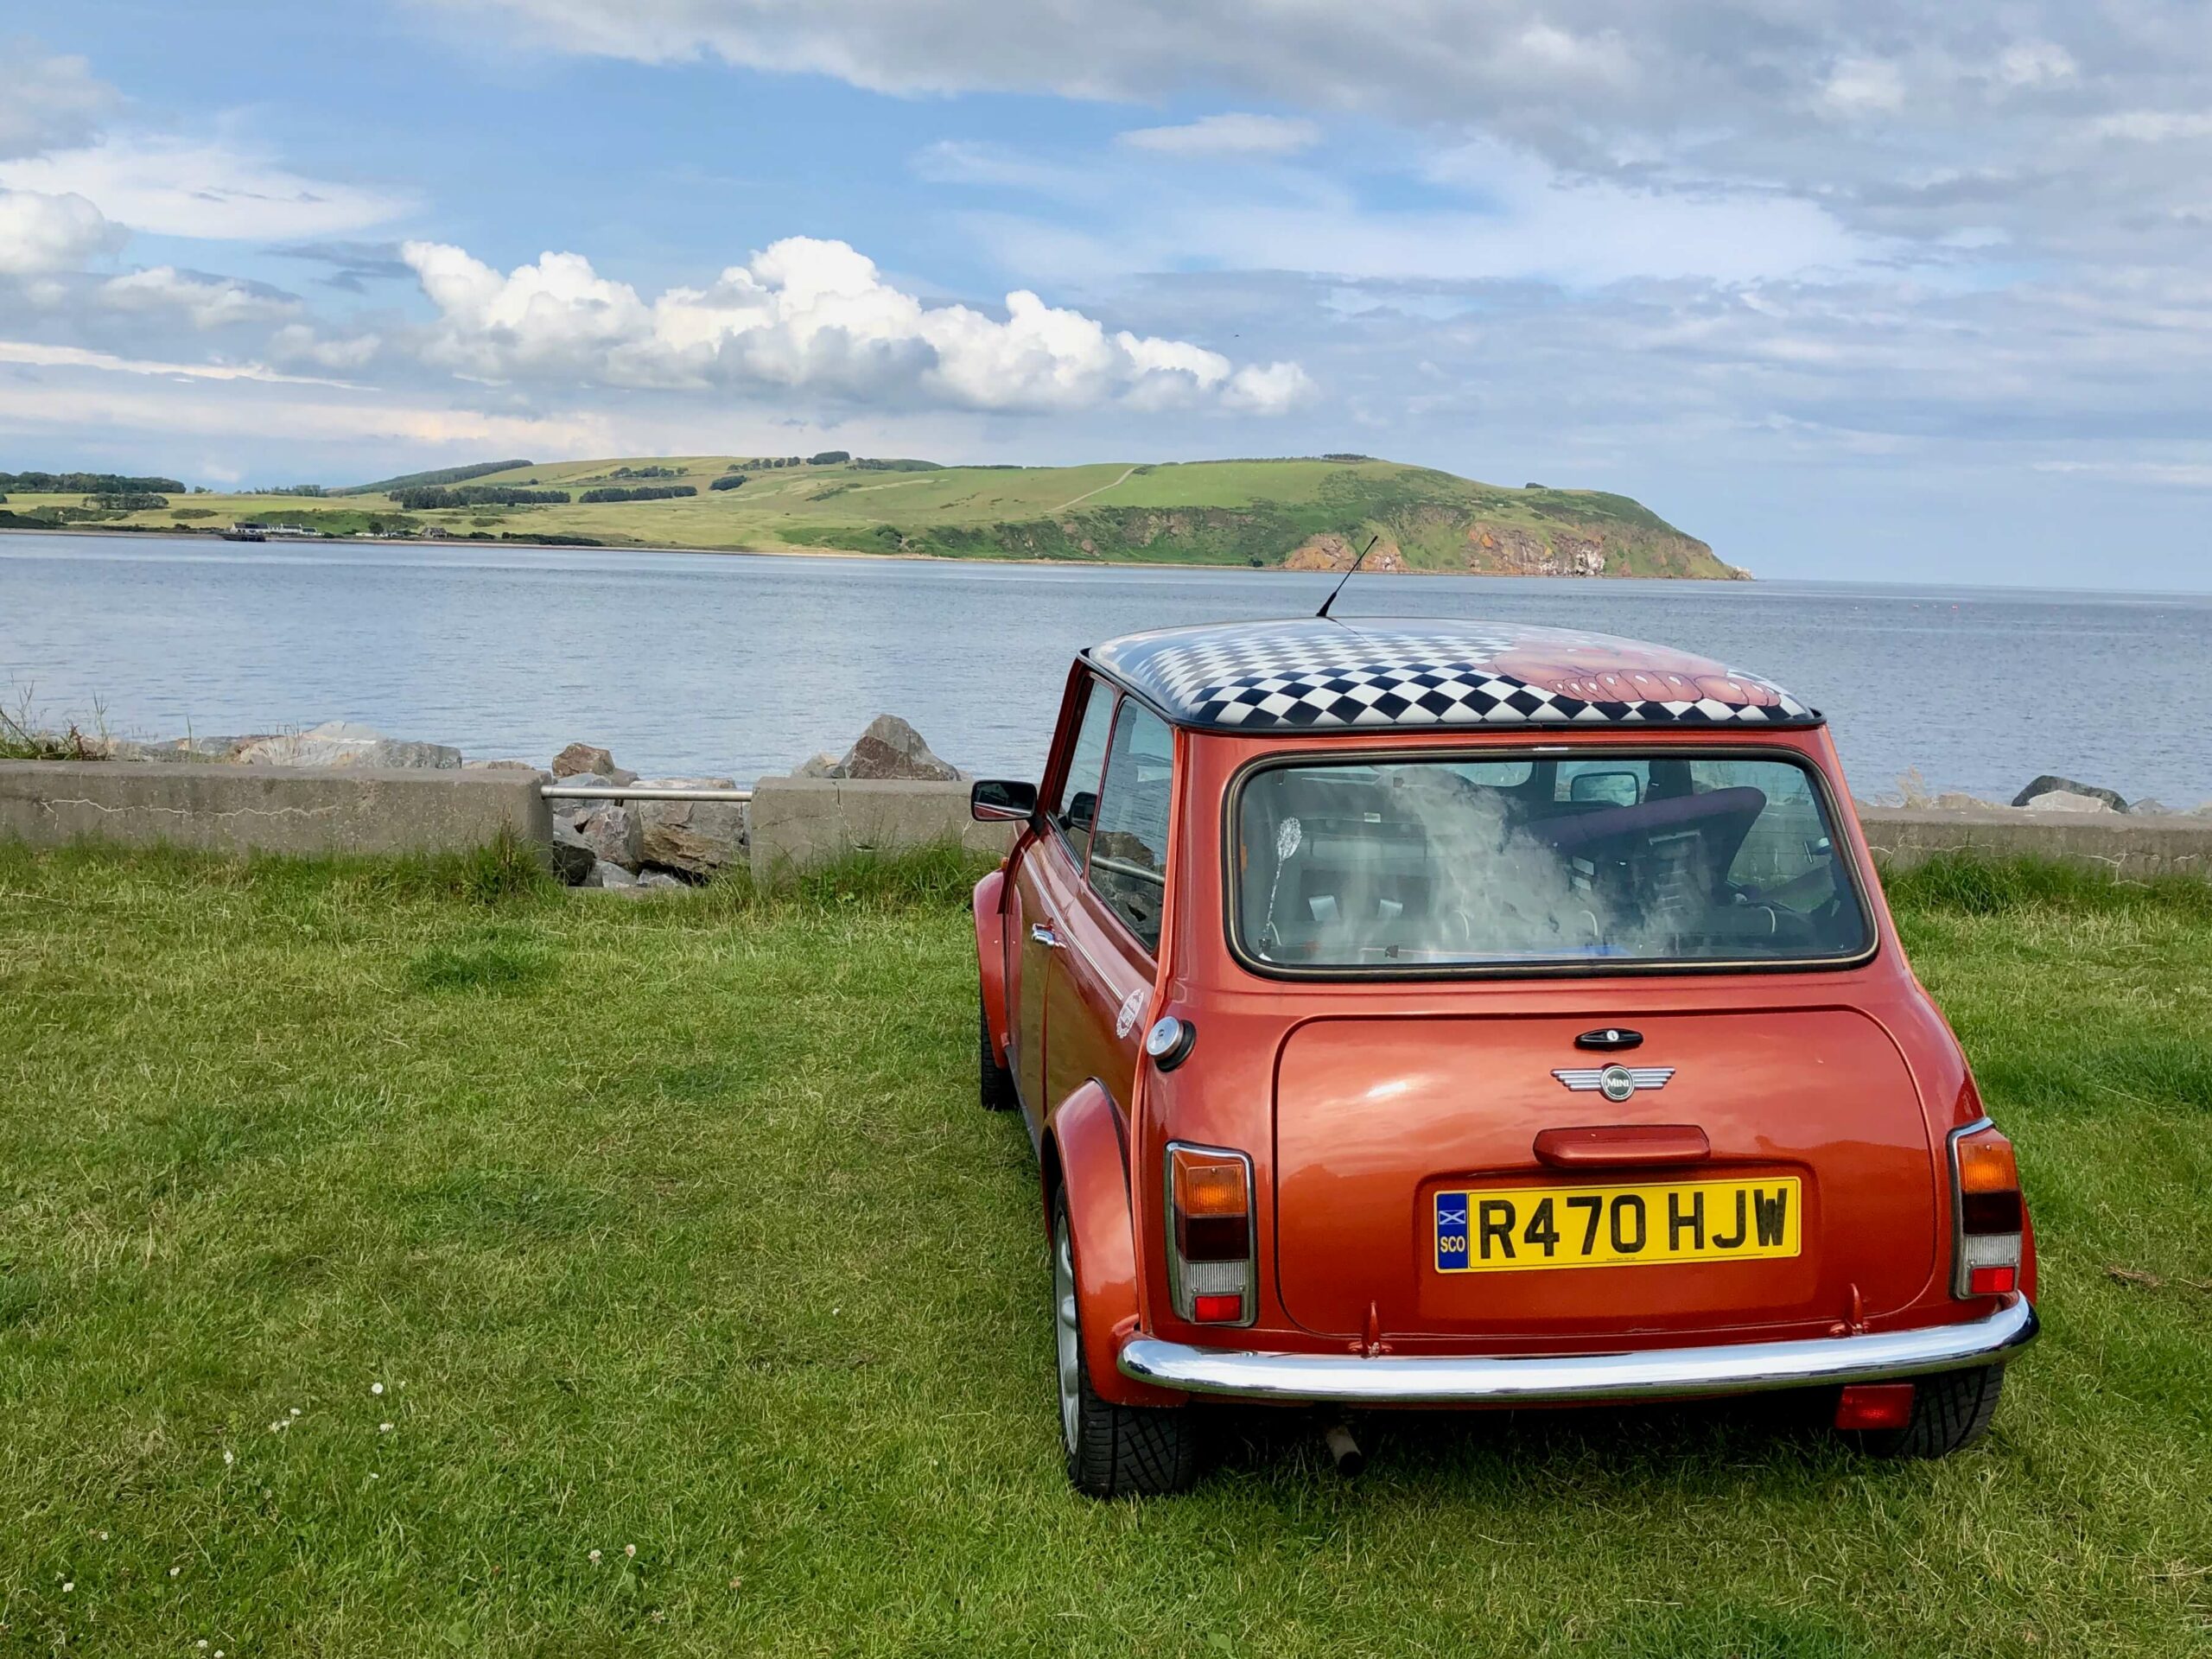 Reisebericht zu unserer Schottland Rundreise mit dem Auto